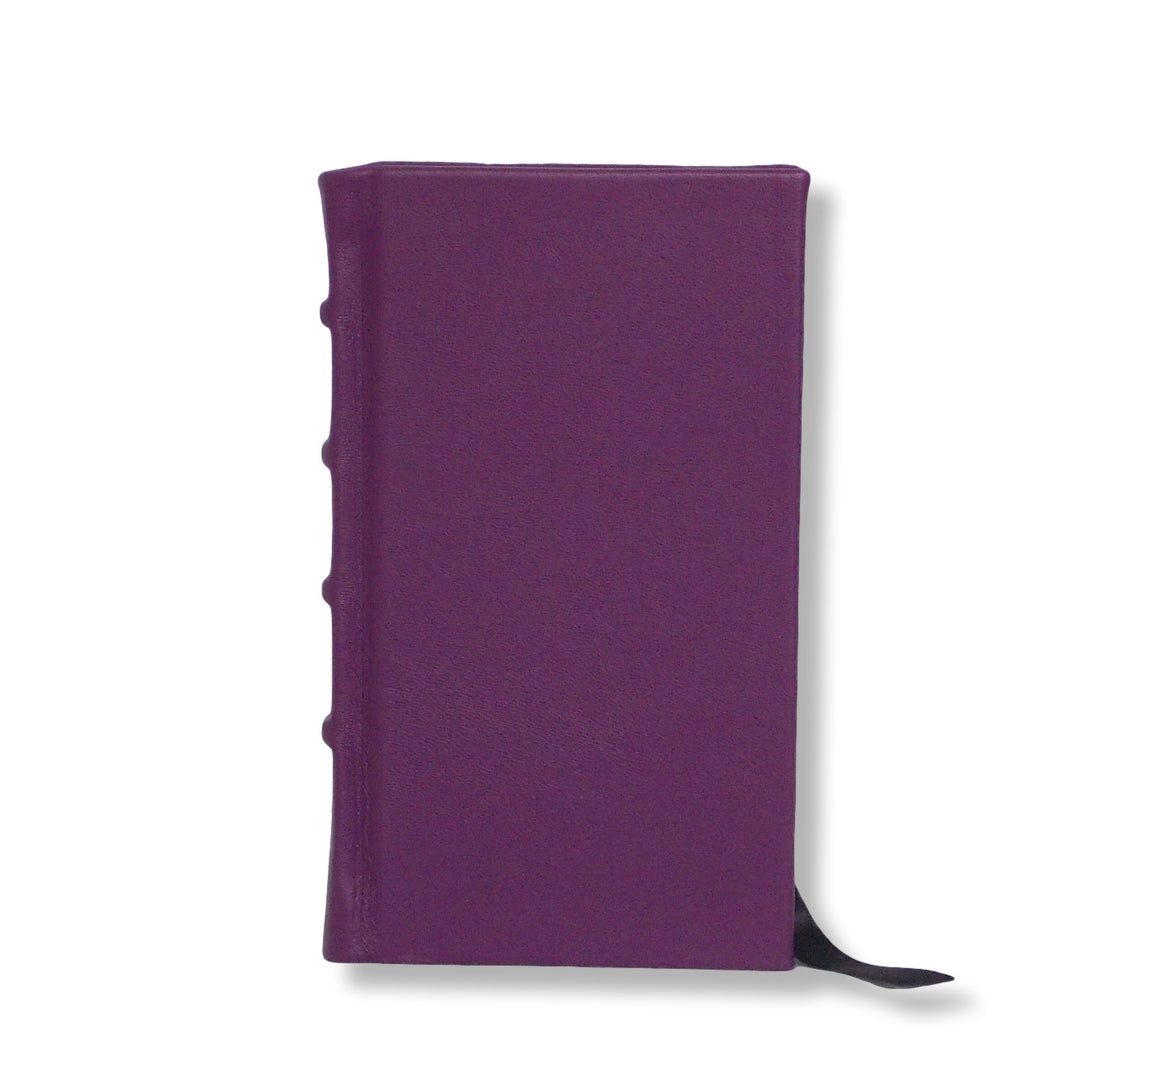 Purple leather slimline journal